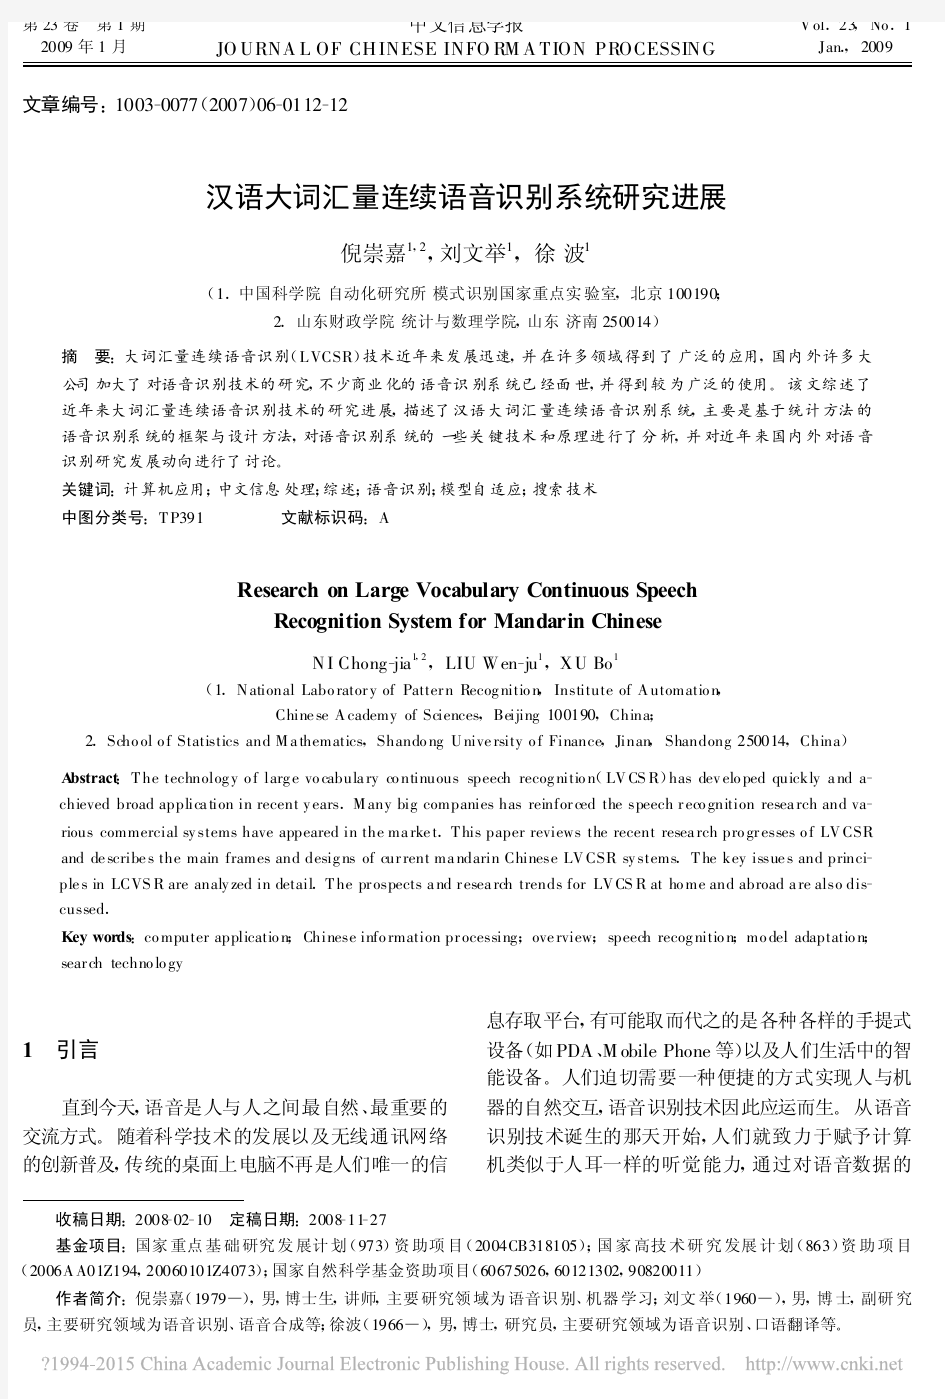 汉语大词汇量连续语音识别系统研究进展